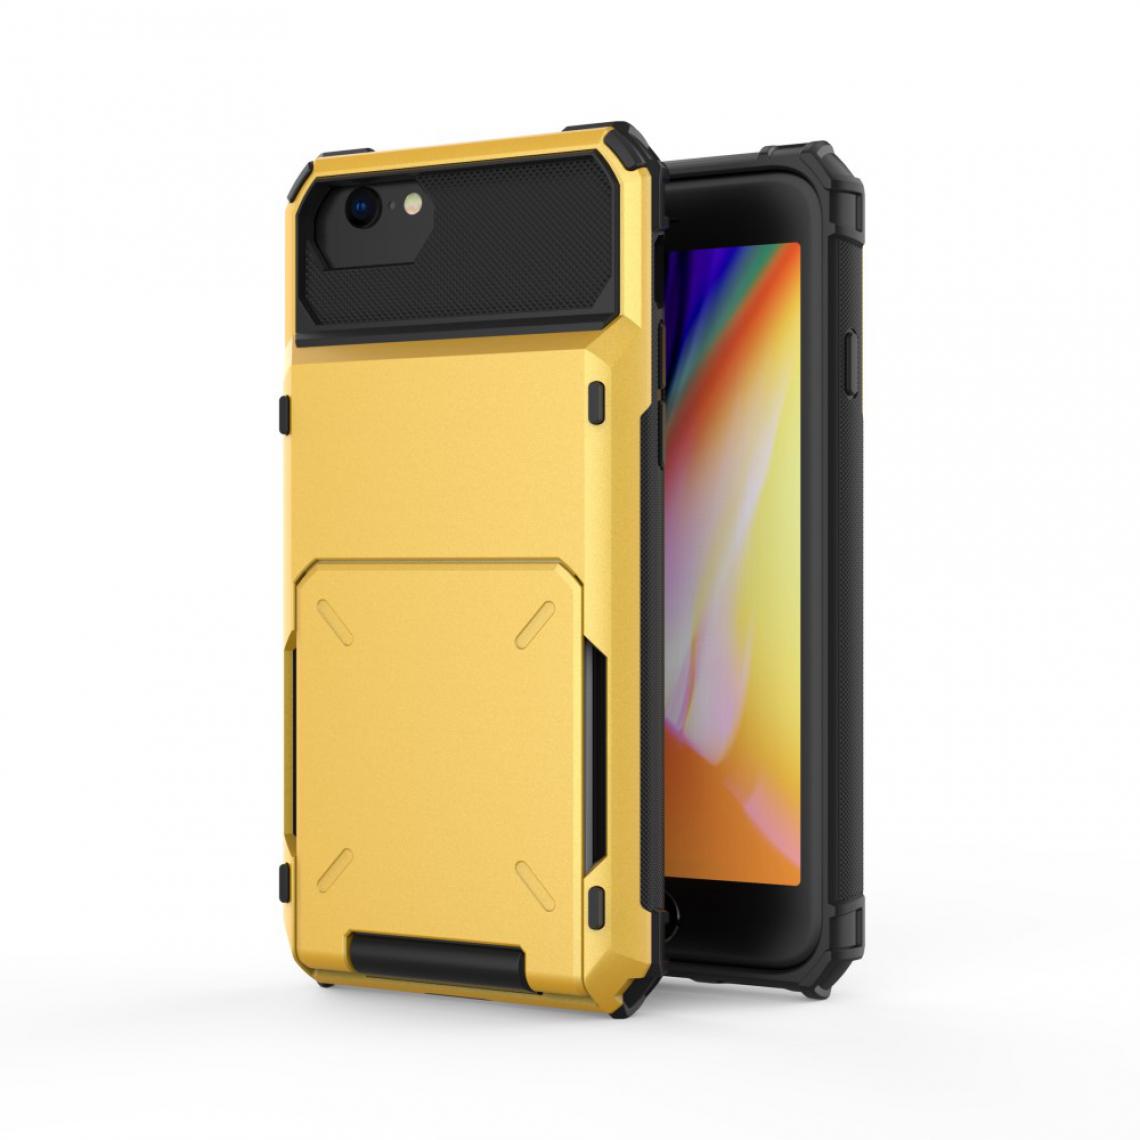 Other - Coque en TPU flip hybride avec porte-carte jaune pour votre Apple iPhone SE (2nd Generation)/8/7 4.7 pouces - Coque, étui smartphone